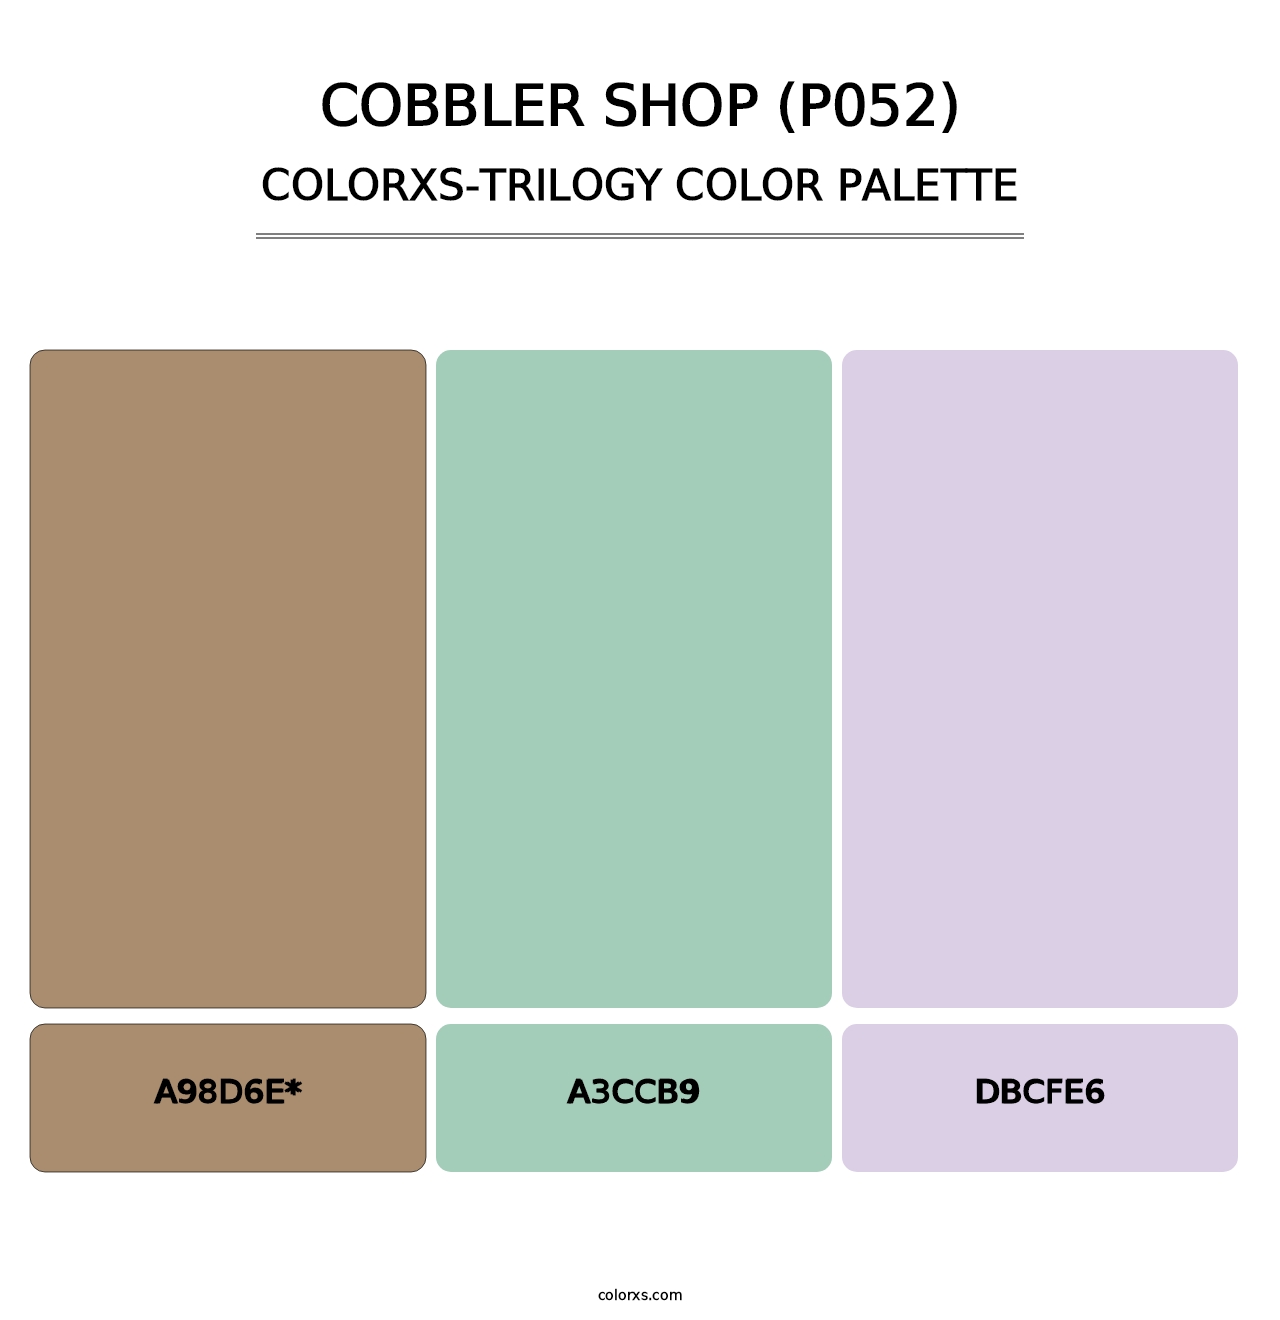 Cobbler Shop (P052) - Colorxs Trilogy Palette